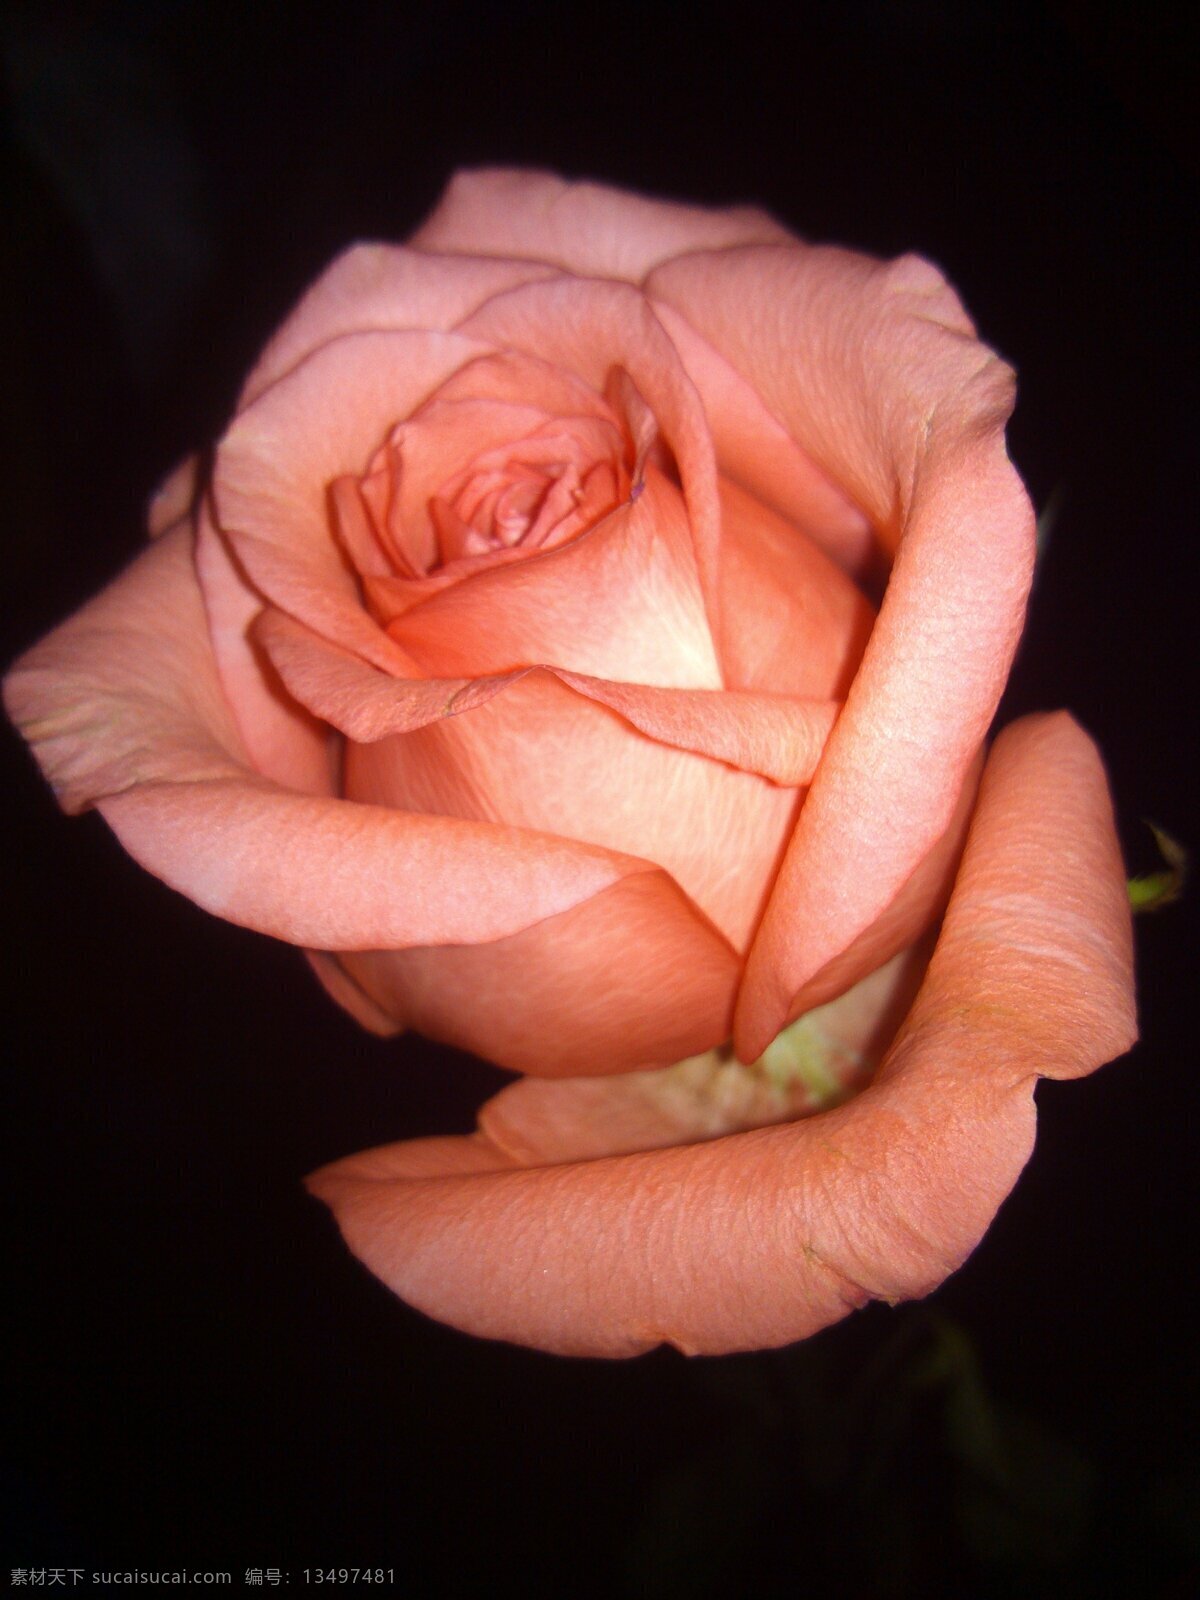 玫瑰花 黑夜 中 粉玫瑰 清香 爱情 美好的姿态 漂亮 花草 生物世界